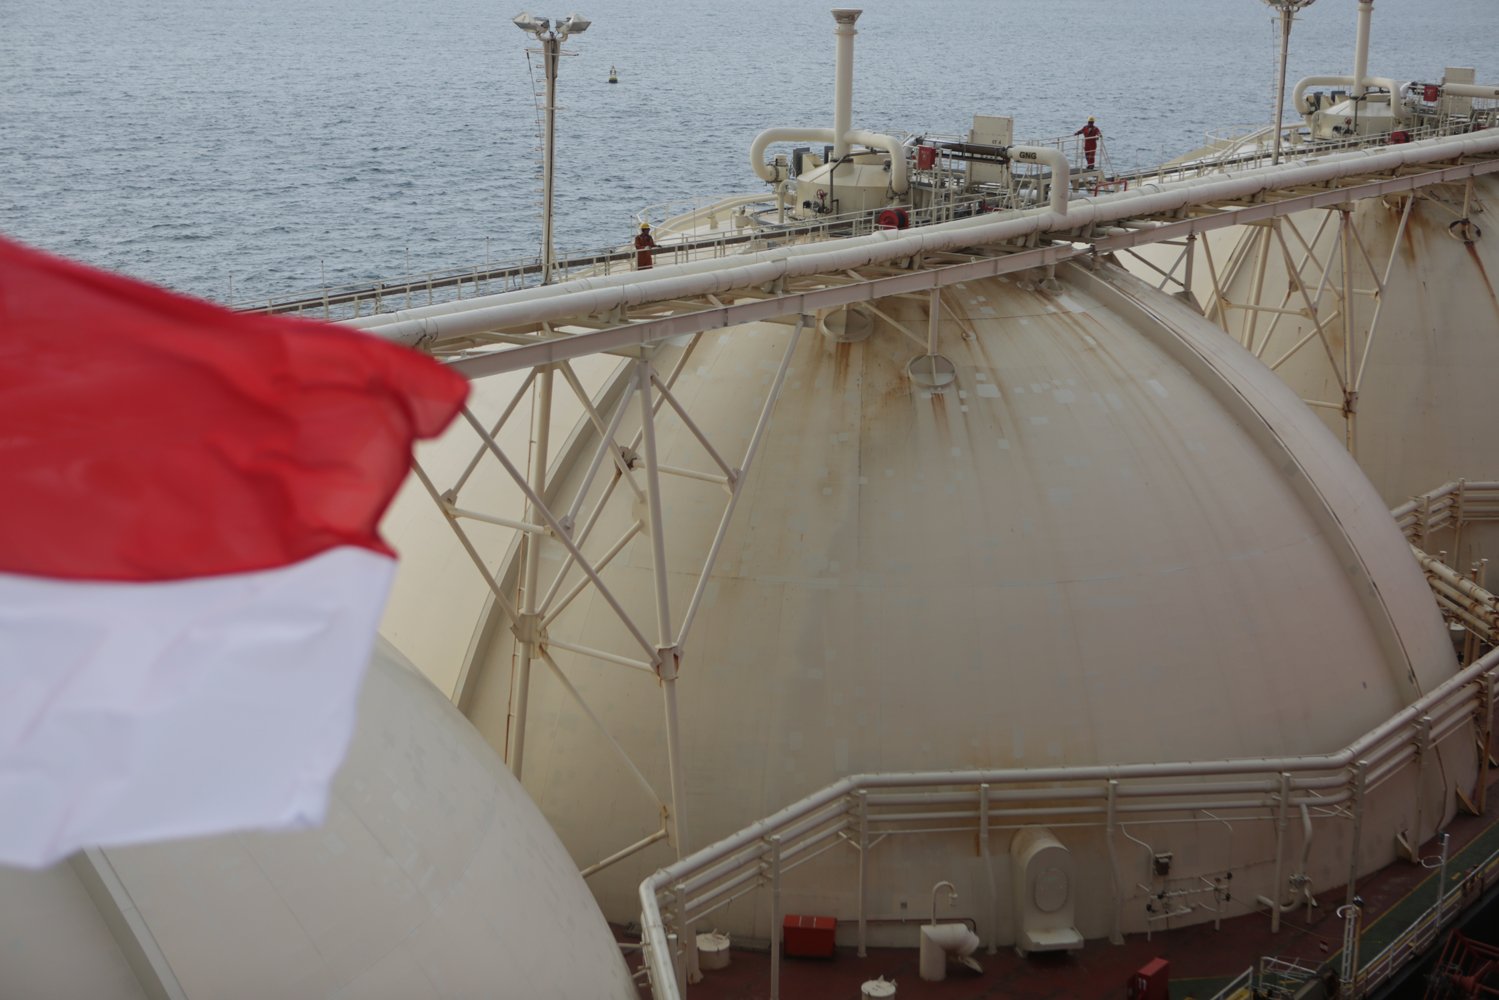 Nusantara Regas saat ini mengembangkan fasilitas FSRU berupa penambahan fitur Offloading (pembongkaran) LNG untuk mini tanker LNG ataupun LNG Barge (tongkang).